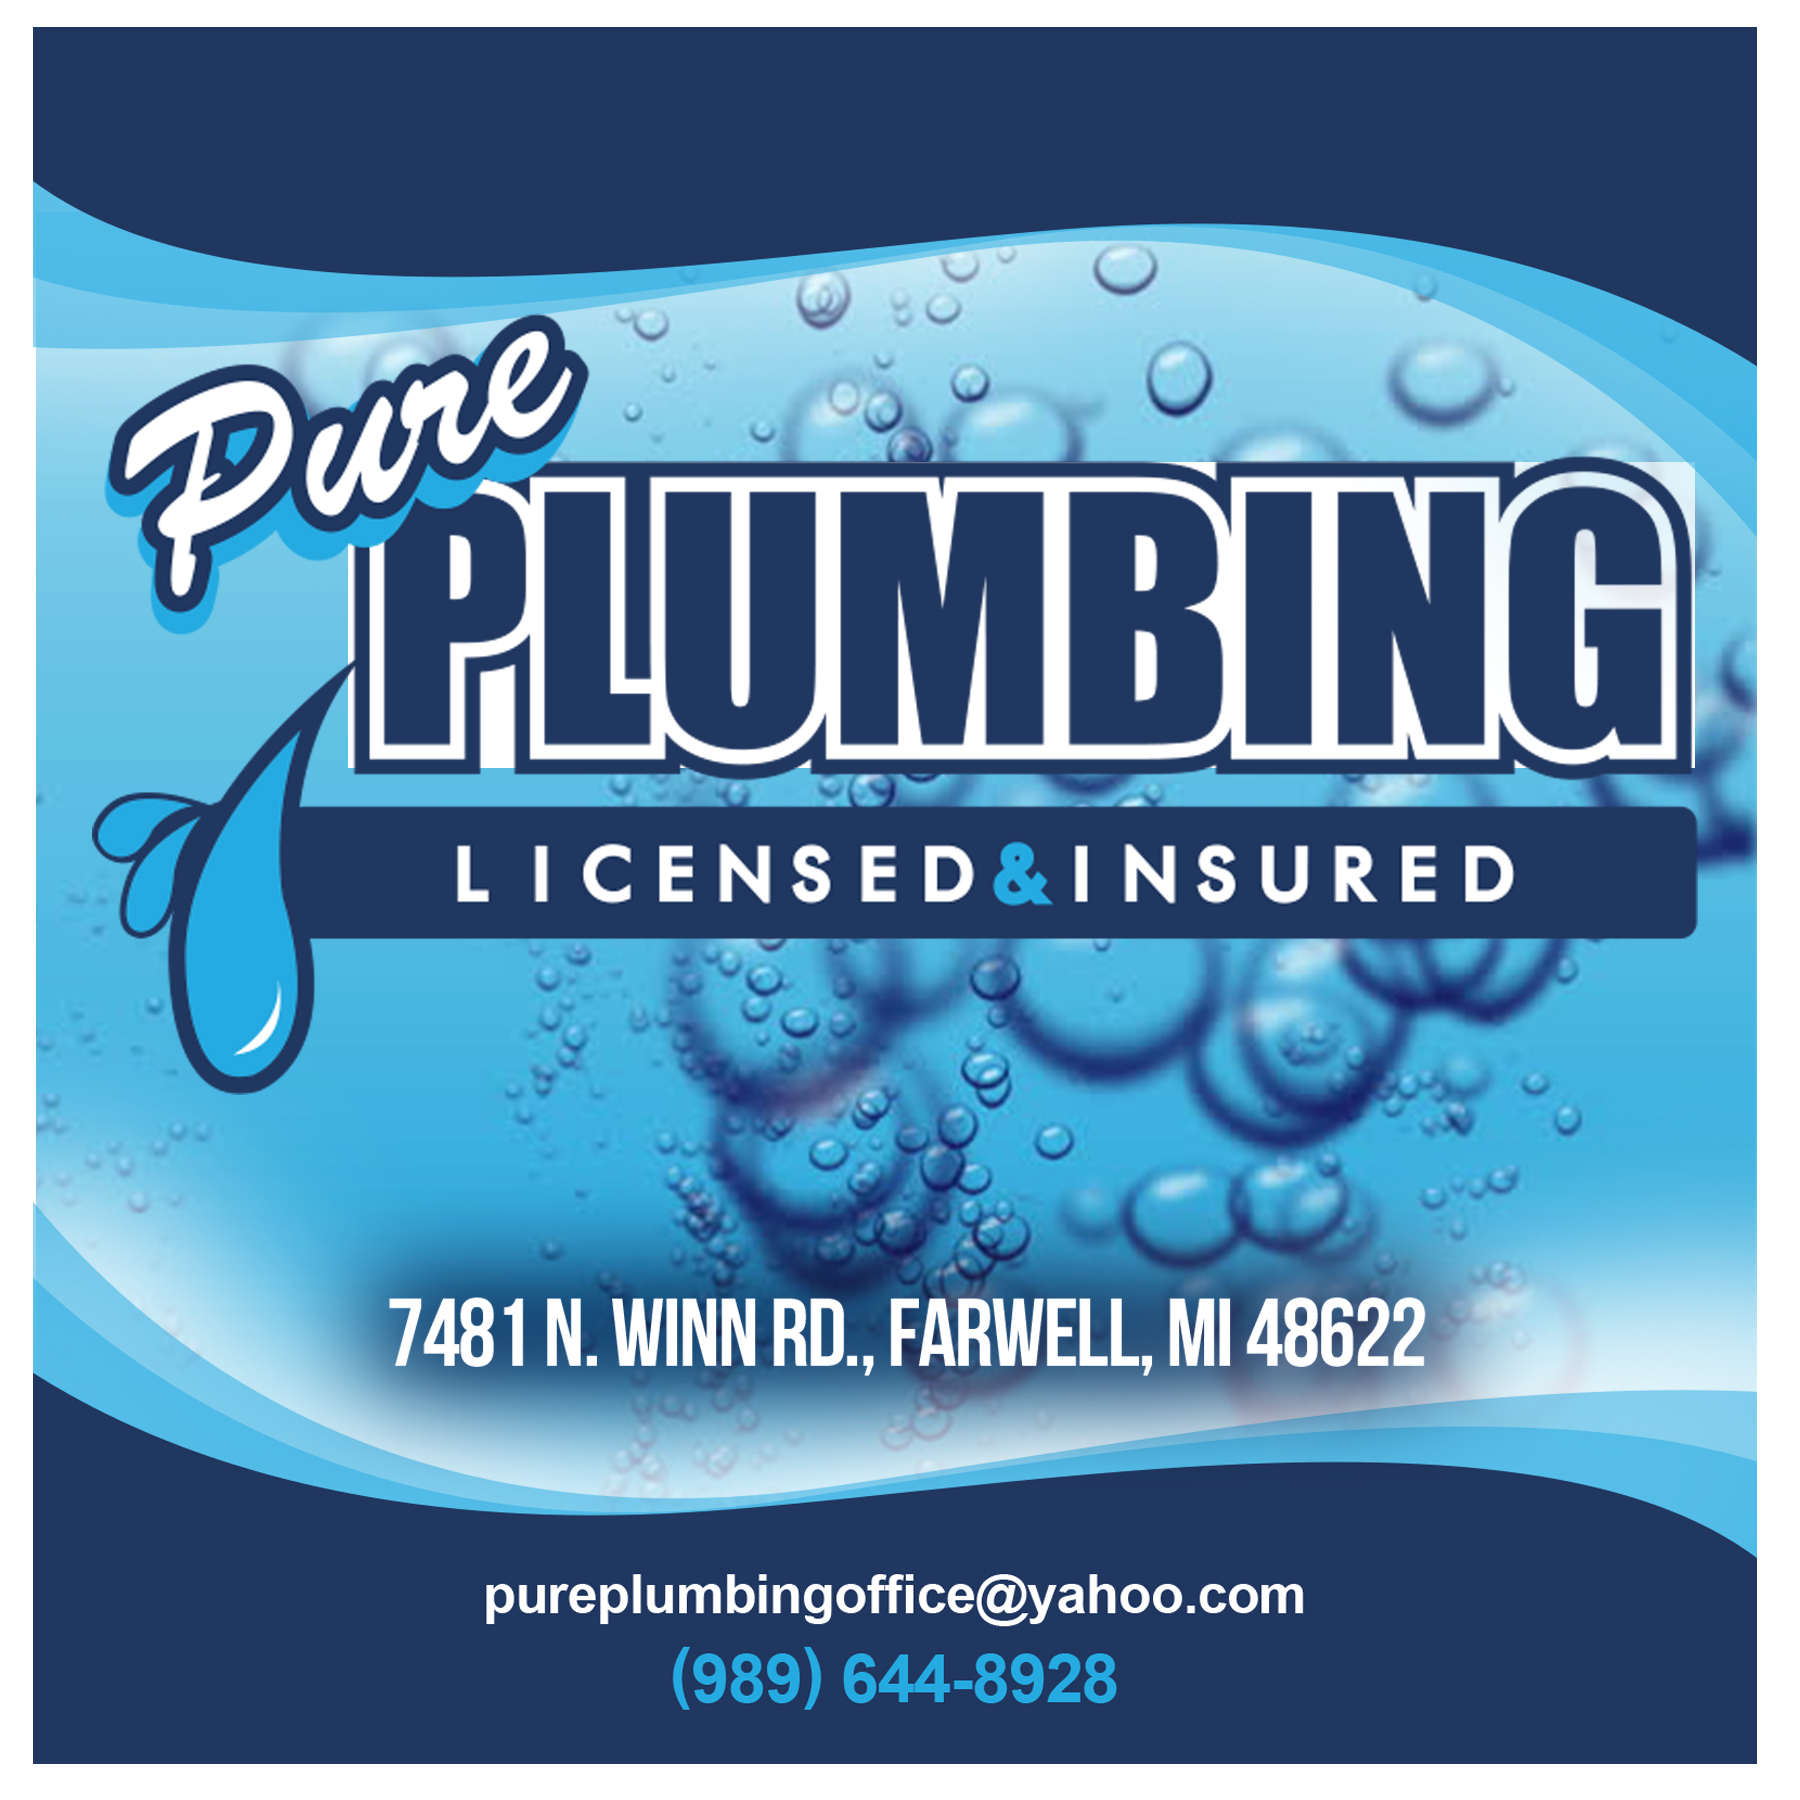 Pure Plumbing LLC 7481 N Winn Rd, Farwell Michigan 48622